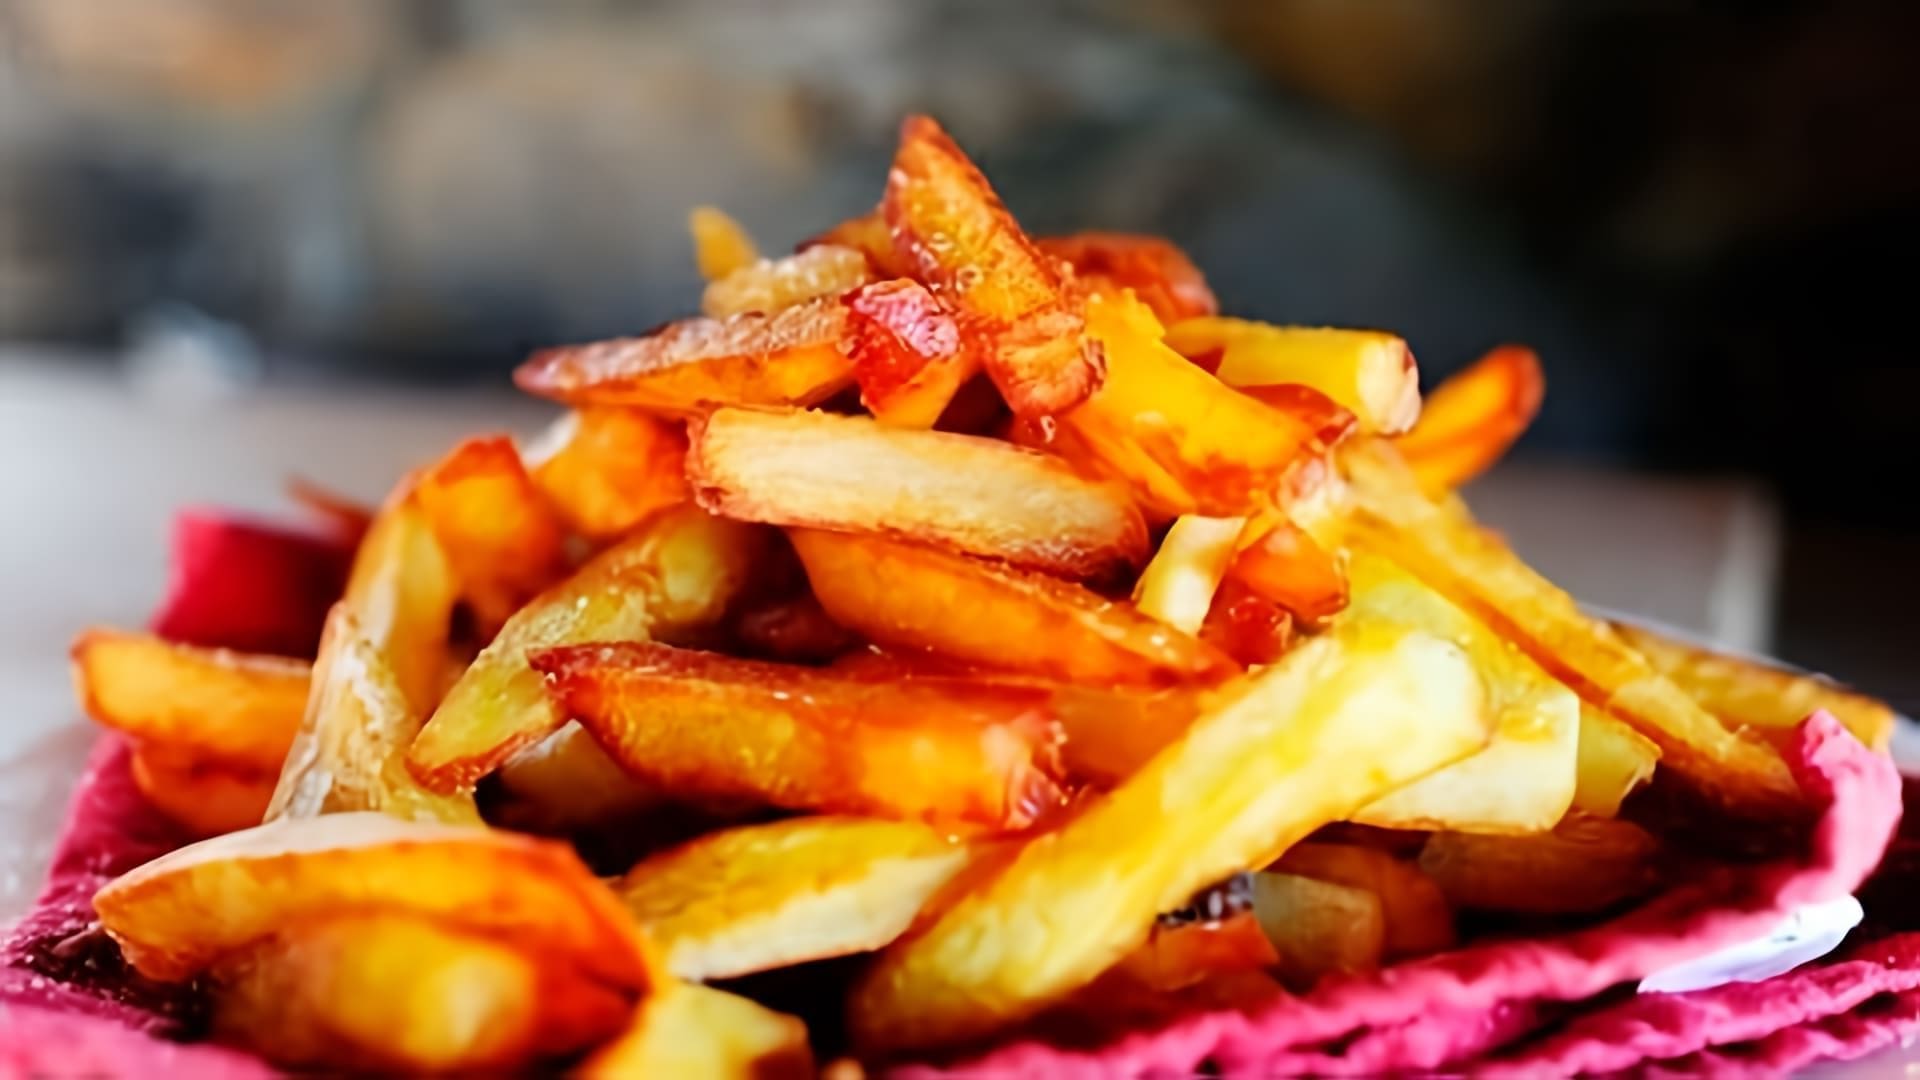 Видео посвящено приготовлению жареных картофеля дома в качестве альтернативы покупным картофельным фри